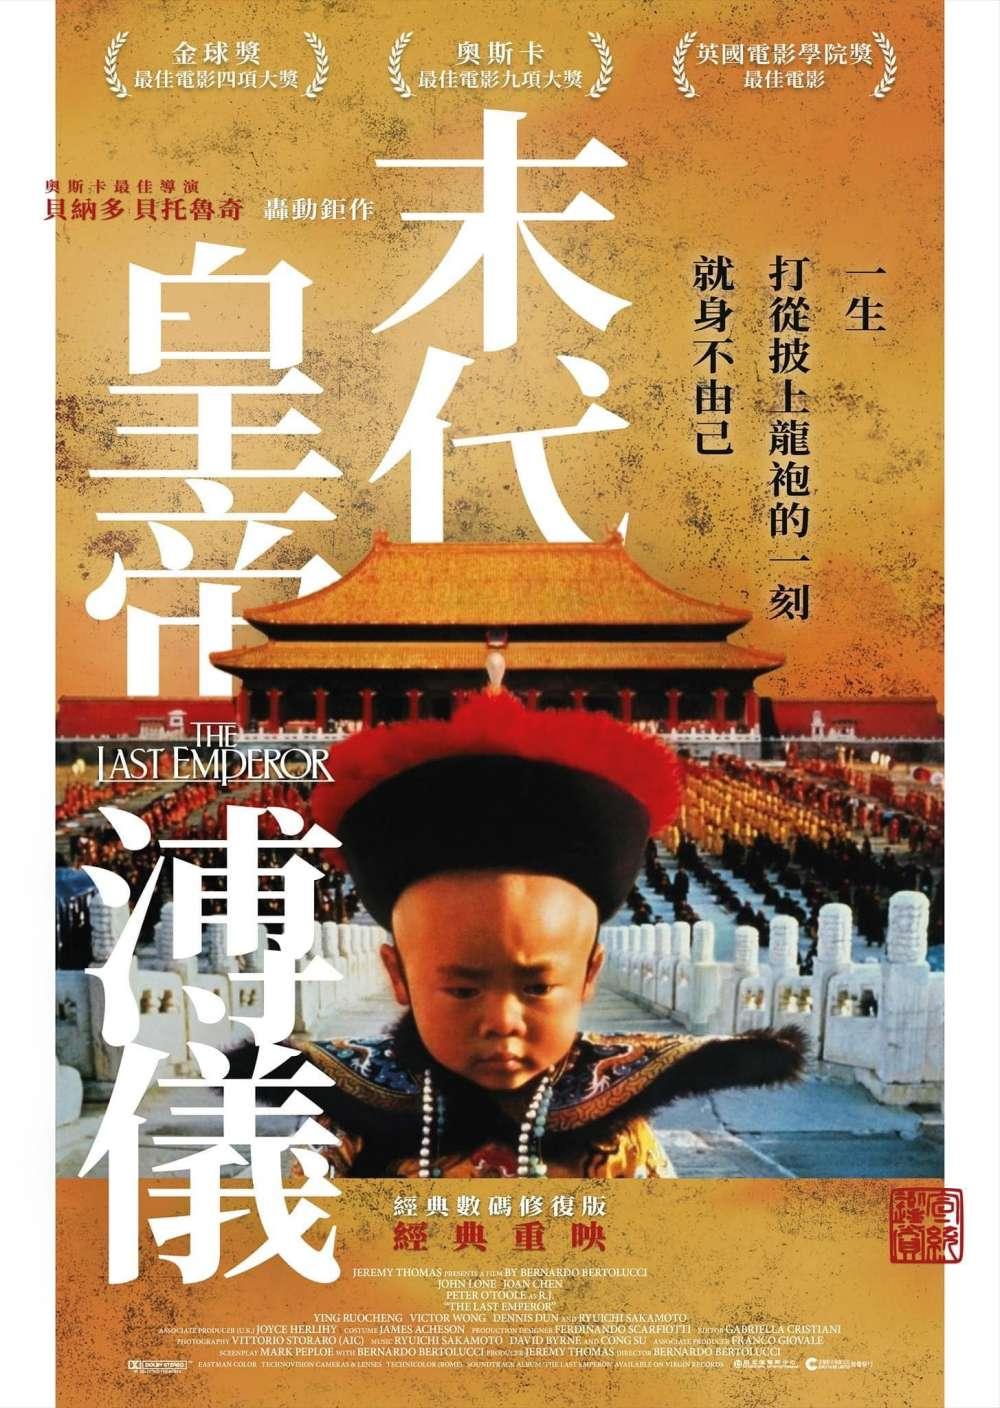 Hong Kong Poster (2020 Version)